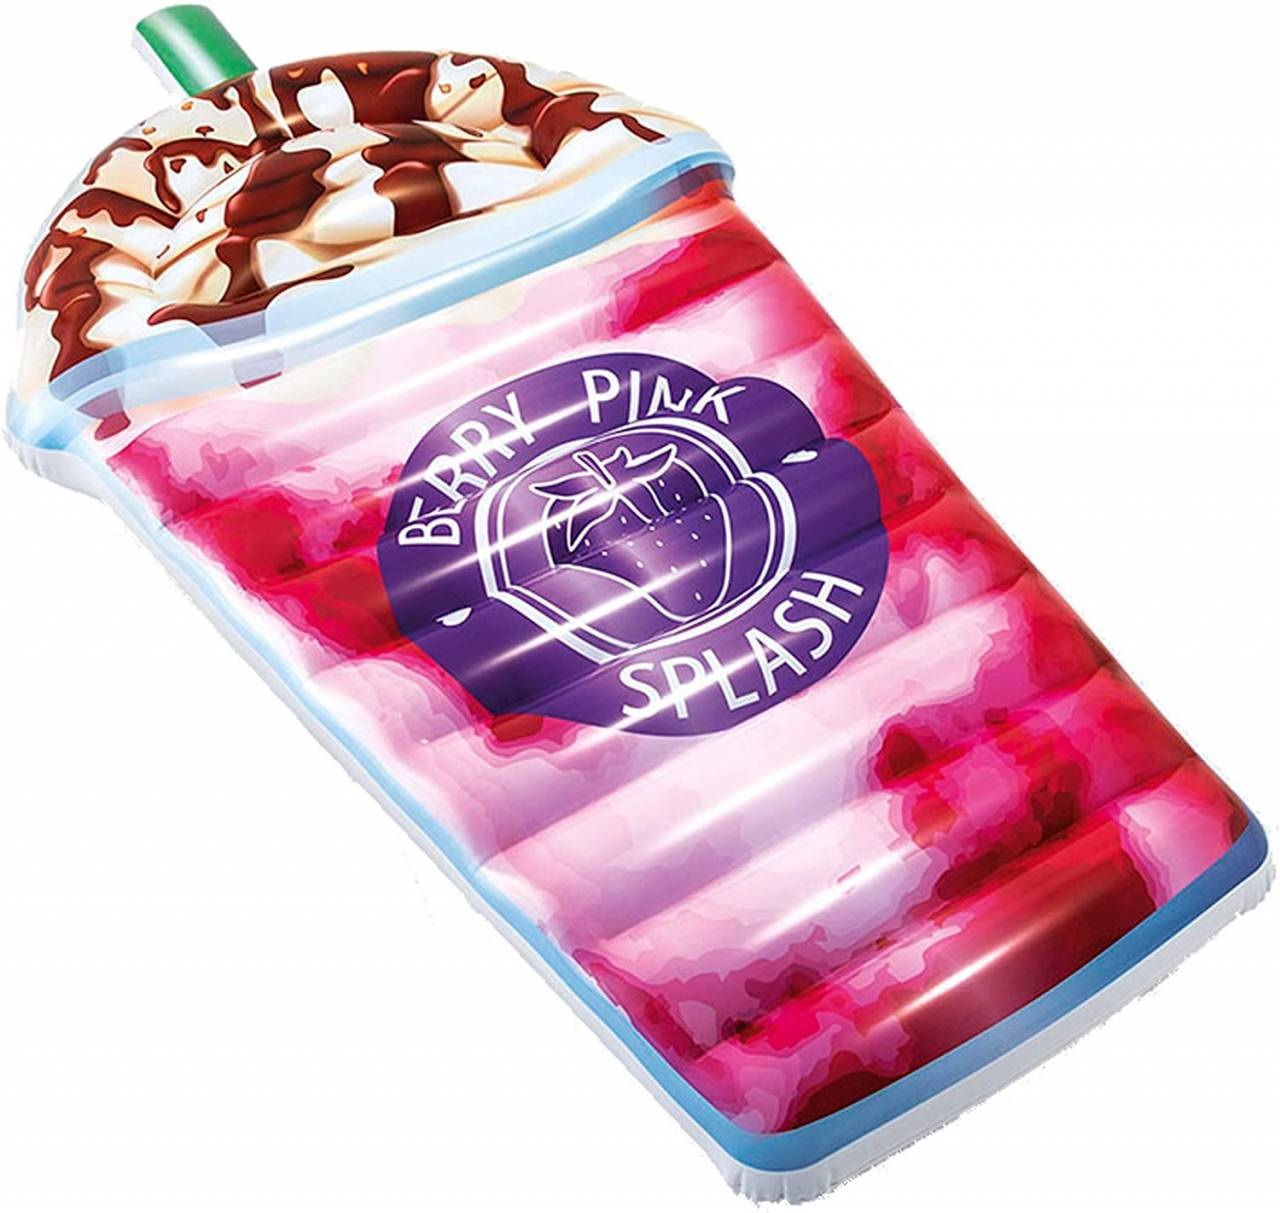 Groot opblaasbaar luchtbed ijsje / ijsbeker roze / milkshake voor het zwembad (Intex) – Kids